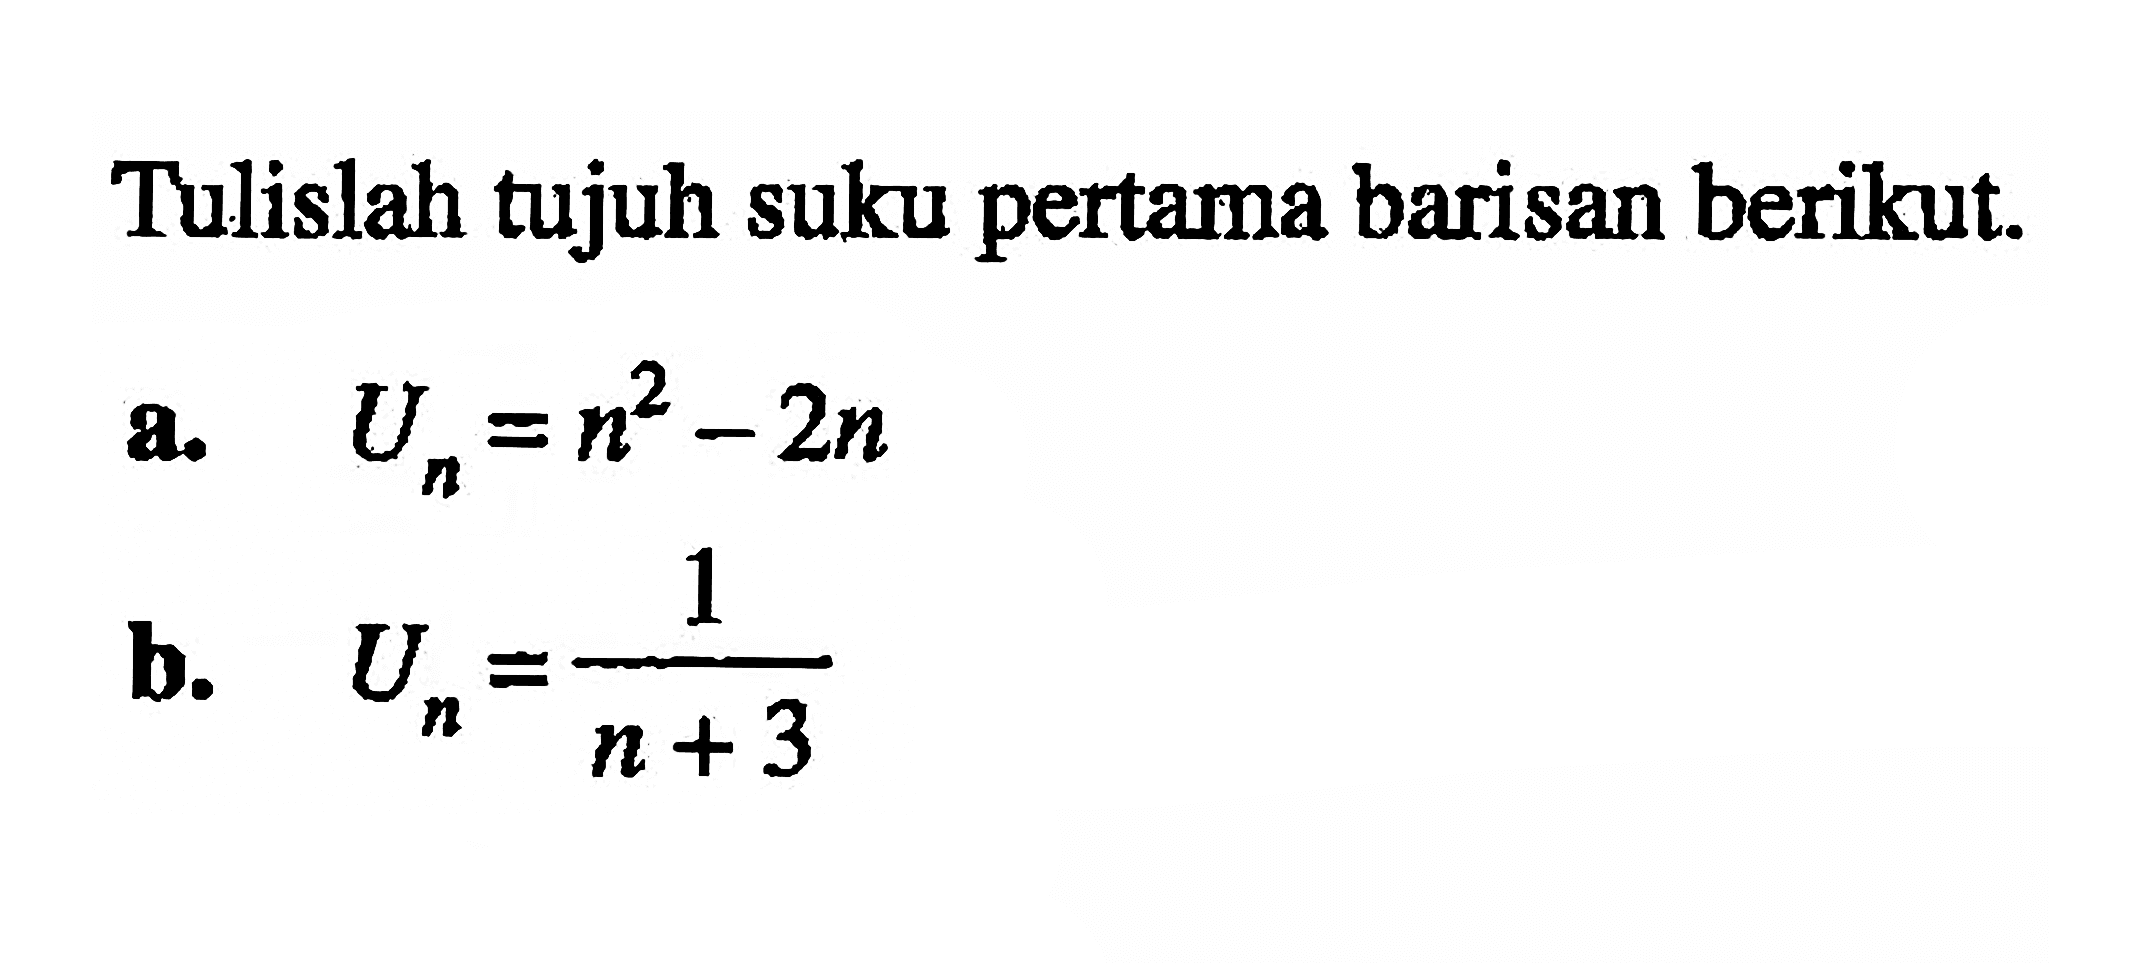 Tulislah tujuh suku pertama barisan berikut. a. Un=n^2-2n b. Un=1/(n+3)